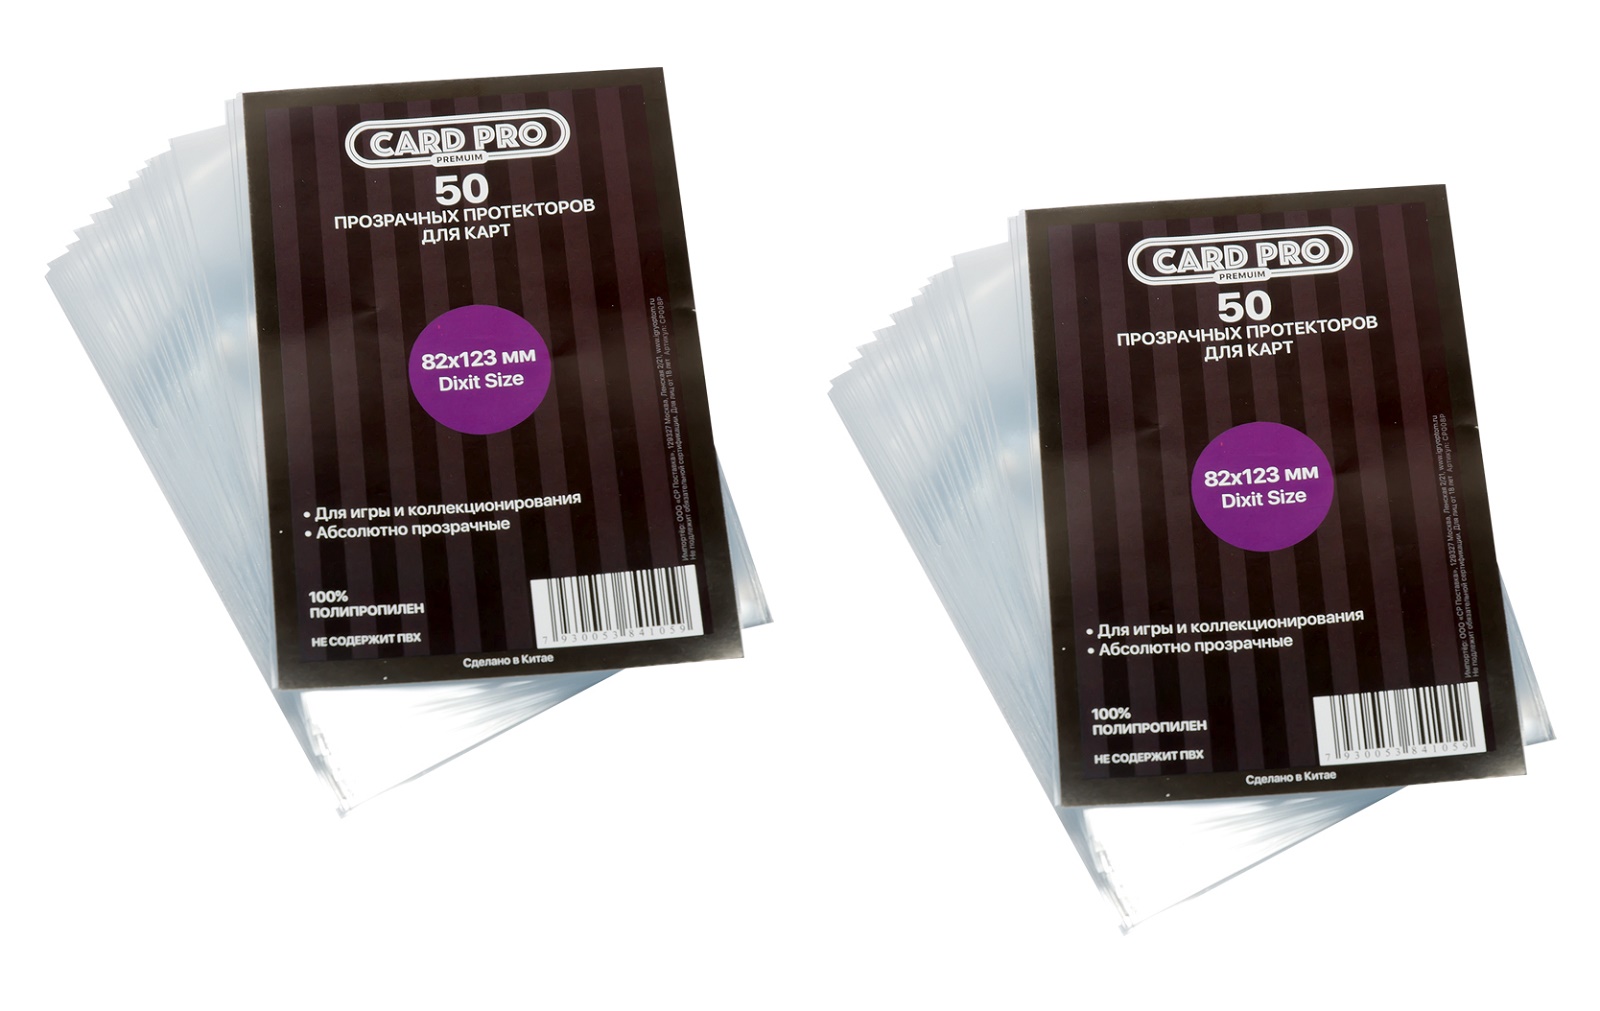 Протекторы Card-Pro PREMIUM Dixit Size для настольных игр 82x123 мм. 2 пачки протекторы card pro quadro для настольных игр 82x82 мм 2 пачки